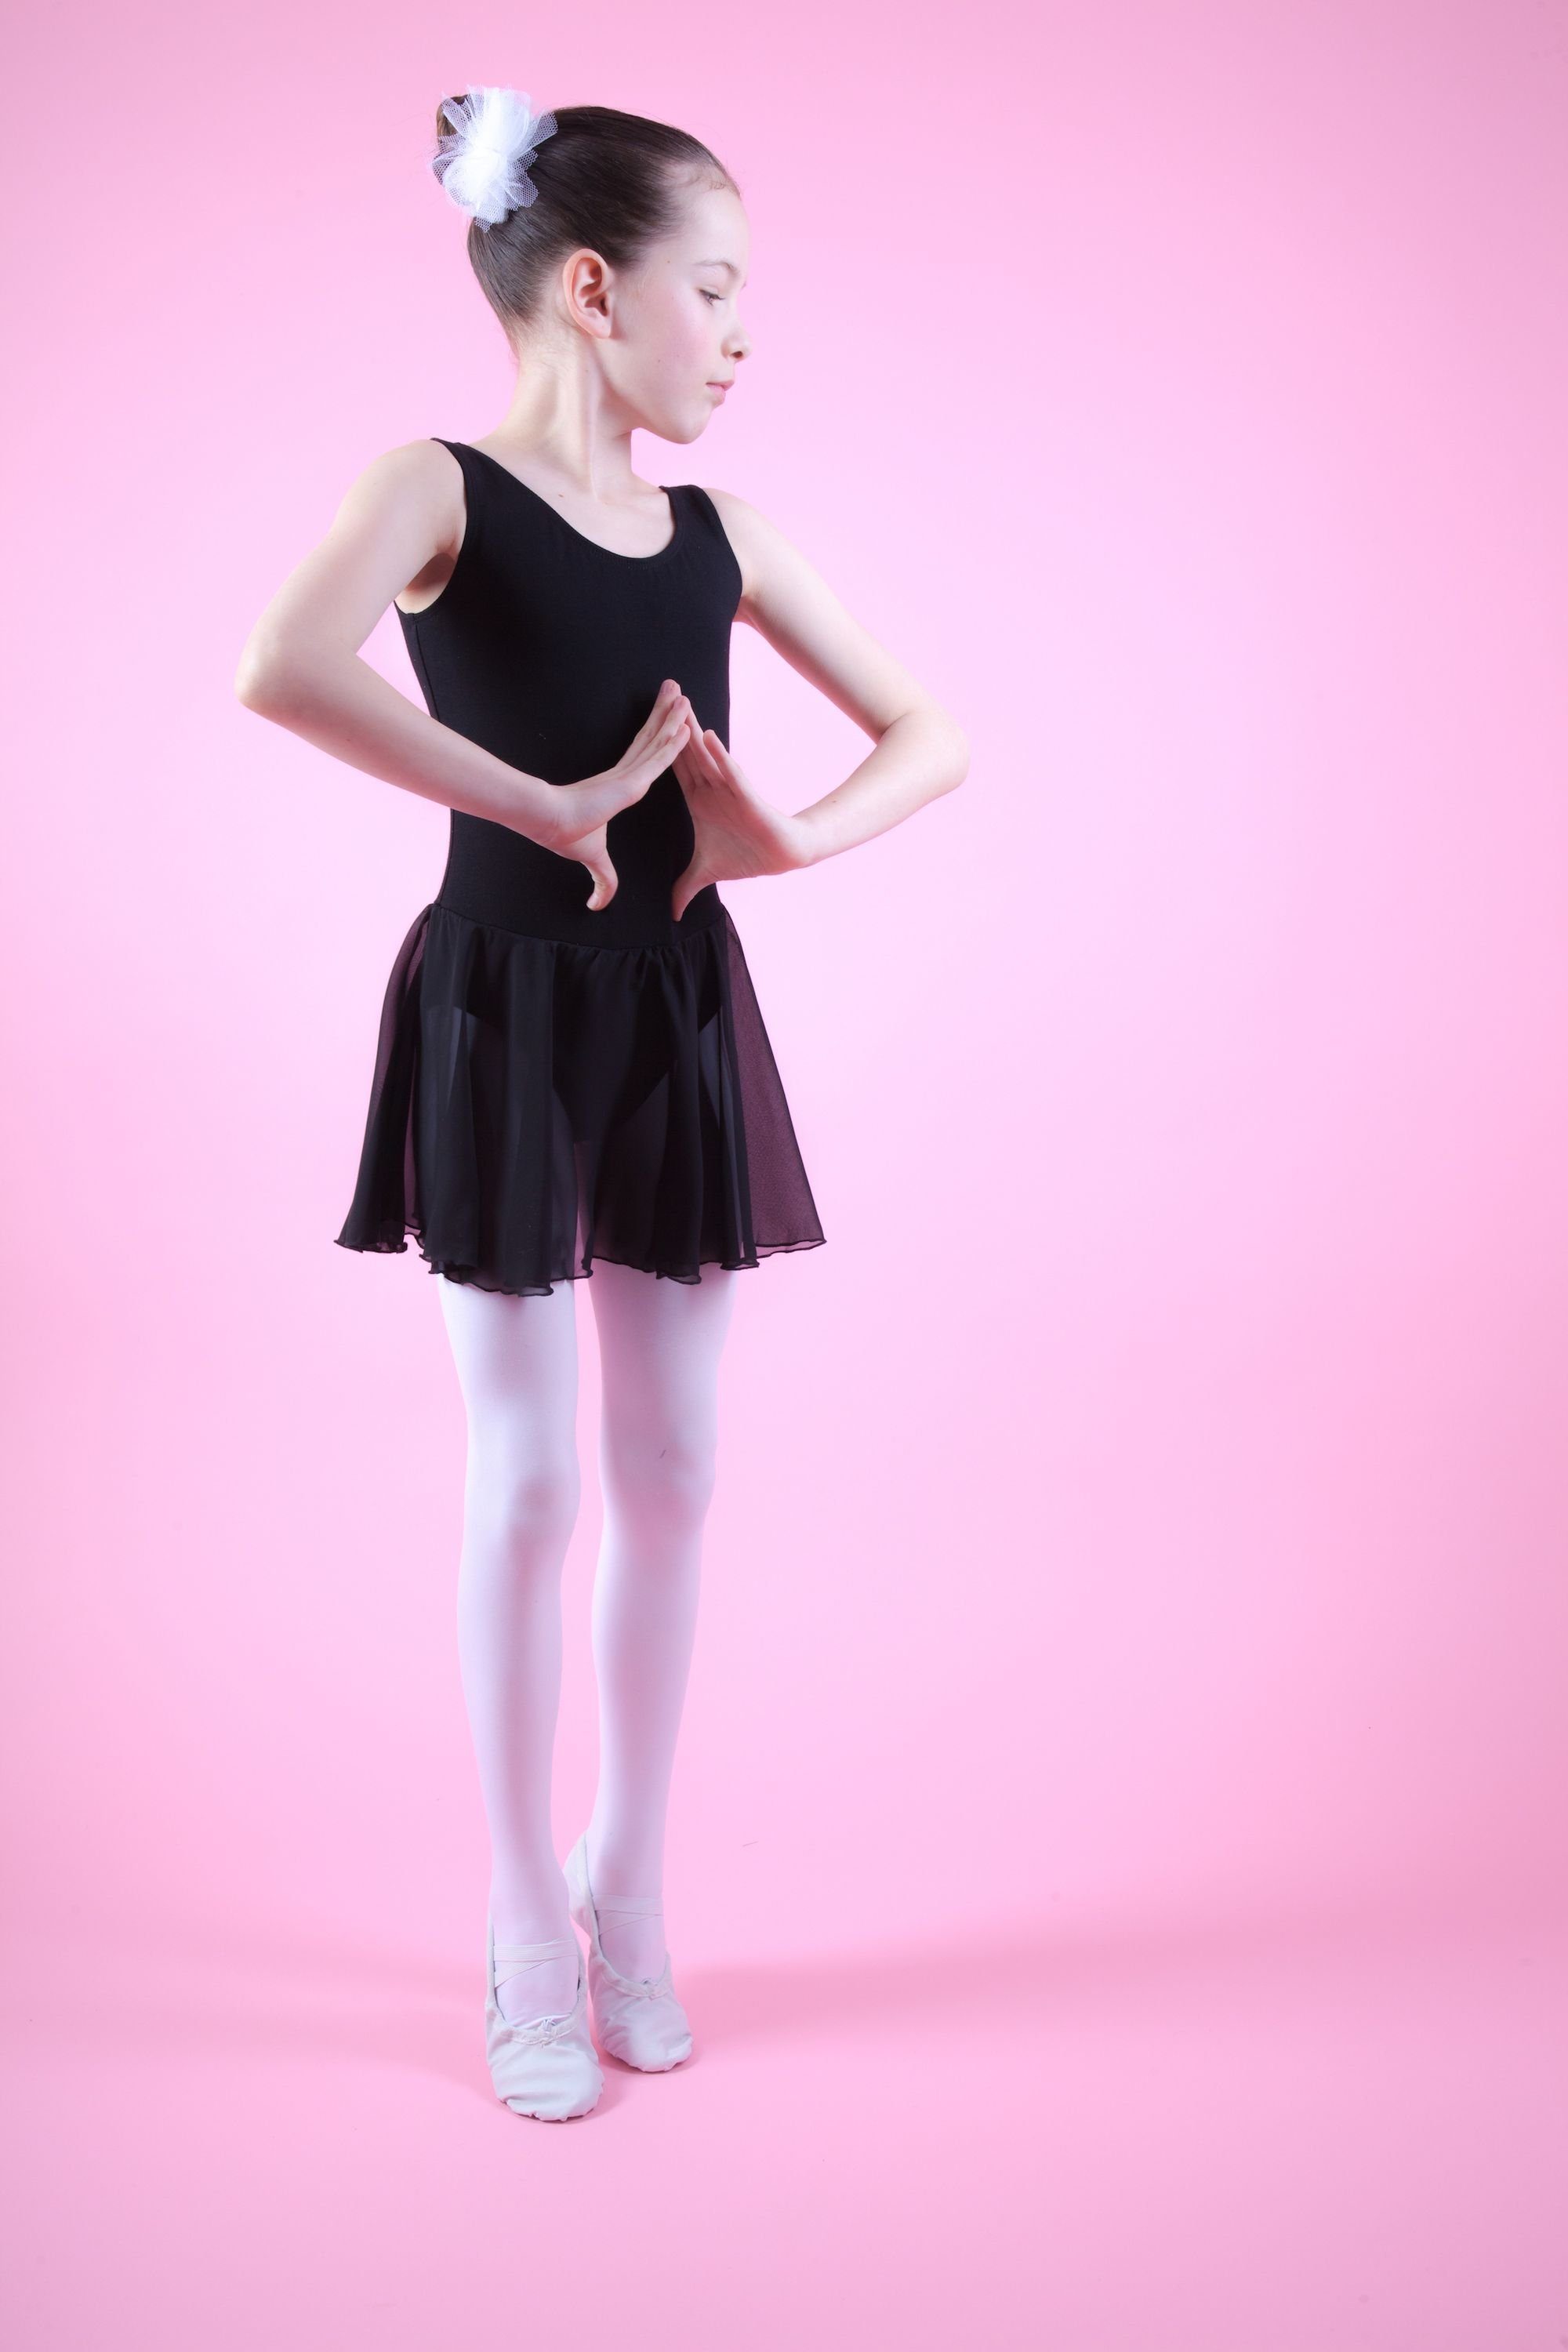 Trikot Minnie Röckchen Ballettkleid Ballett Baumwollmaterial Chiffonkleid schwarz Chiffon Mädchen wunderbar mit weichem tanzmuster für aus